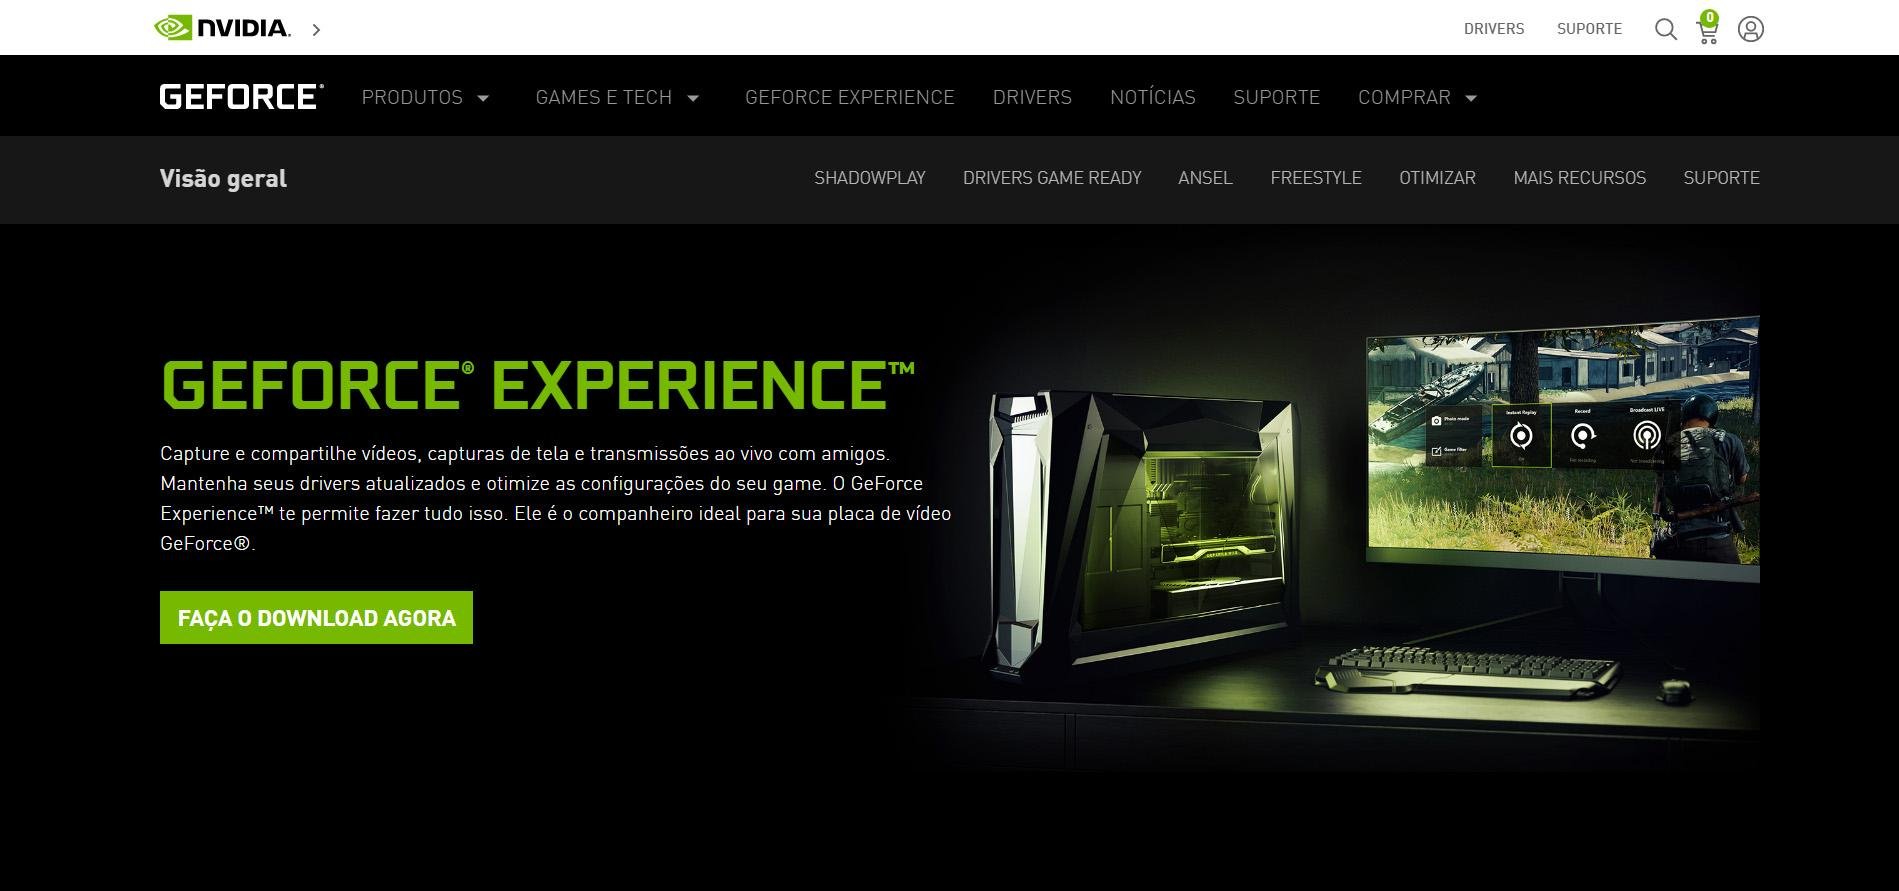 Página de download do GeForce Experience. (Fonte: Nvidia / Reprodução)